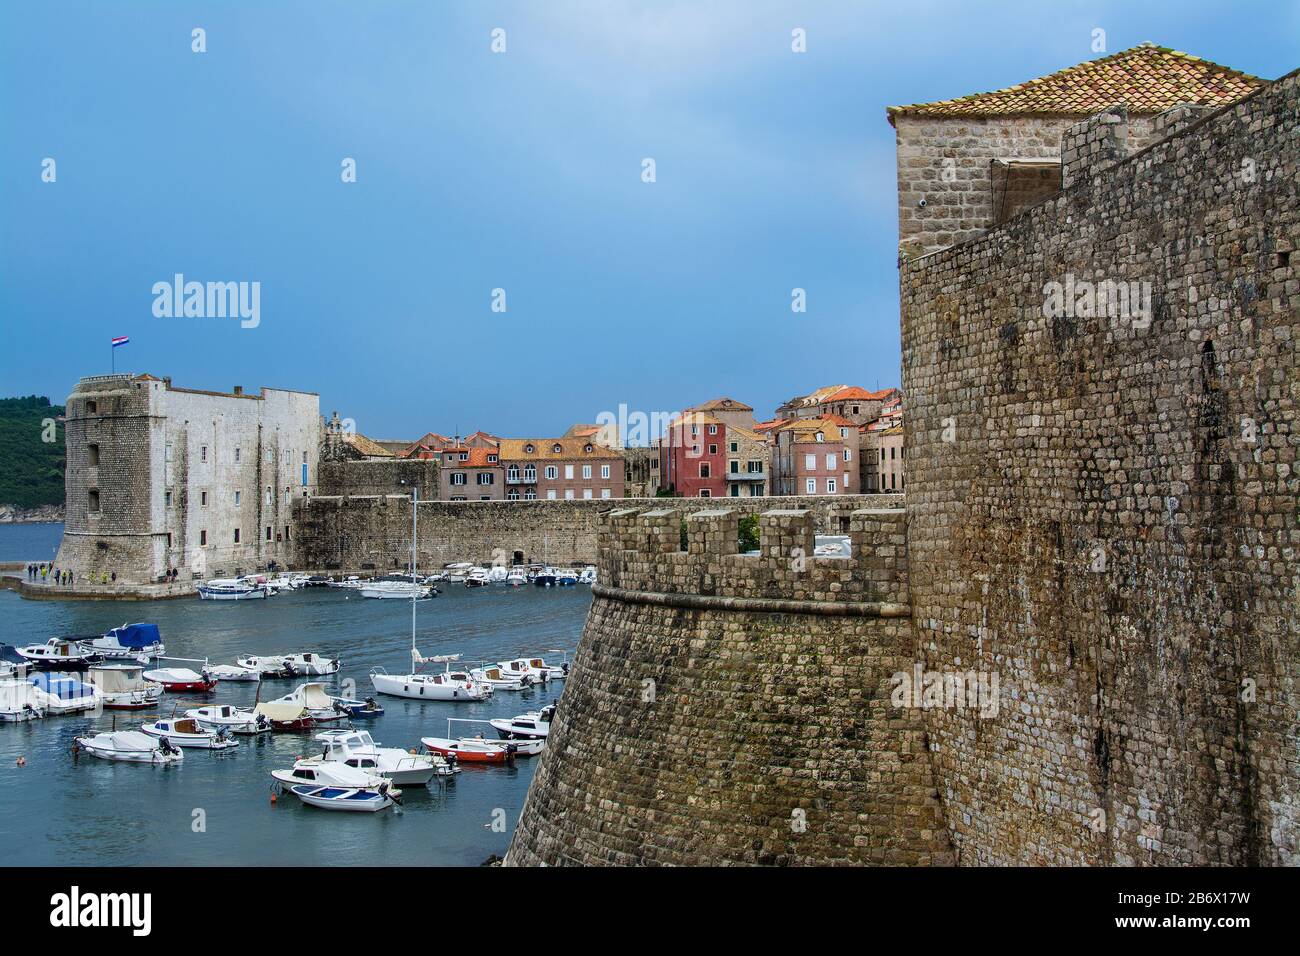 old town of Dubrovnik, harbor, city walls, Croatia UNESCO Stock Photo